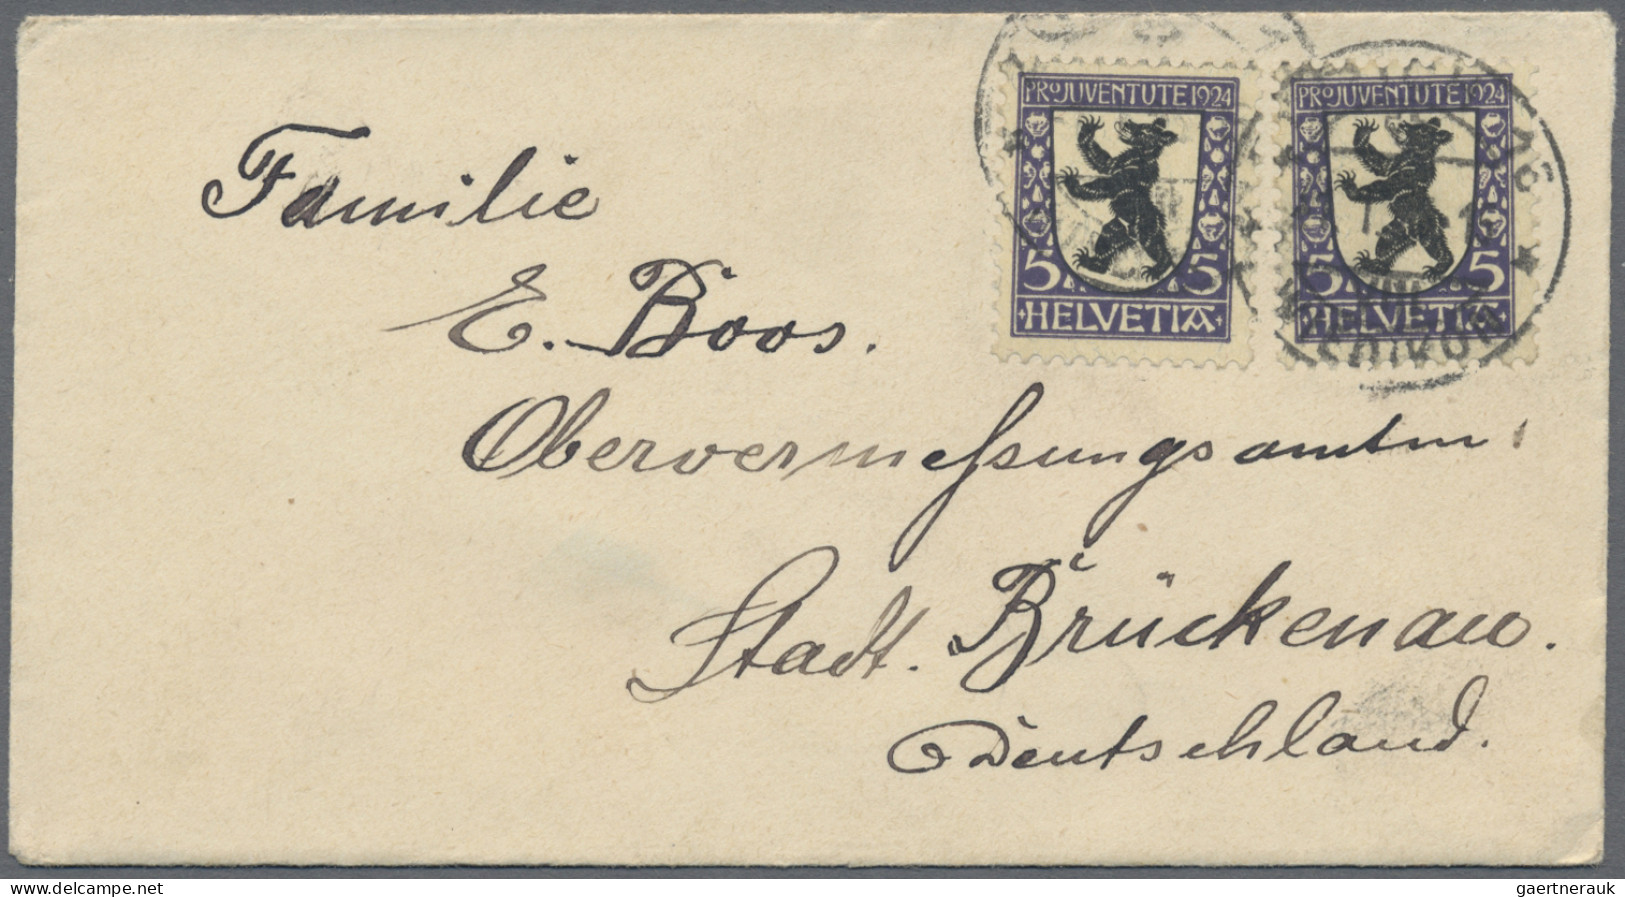 Schweiz: 1885/1980, Partie von ca. 155 Briefen und Karten, dabei attraktive Fank